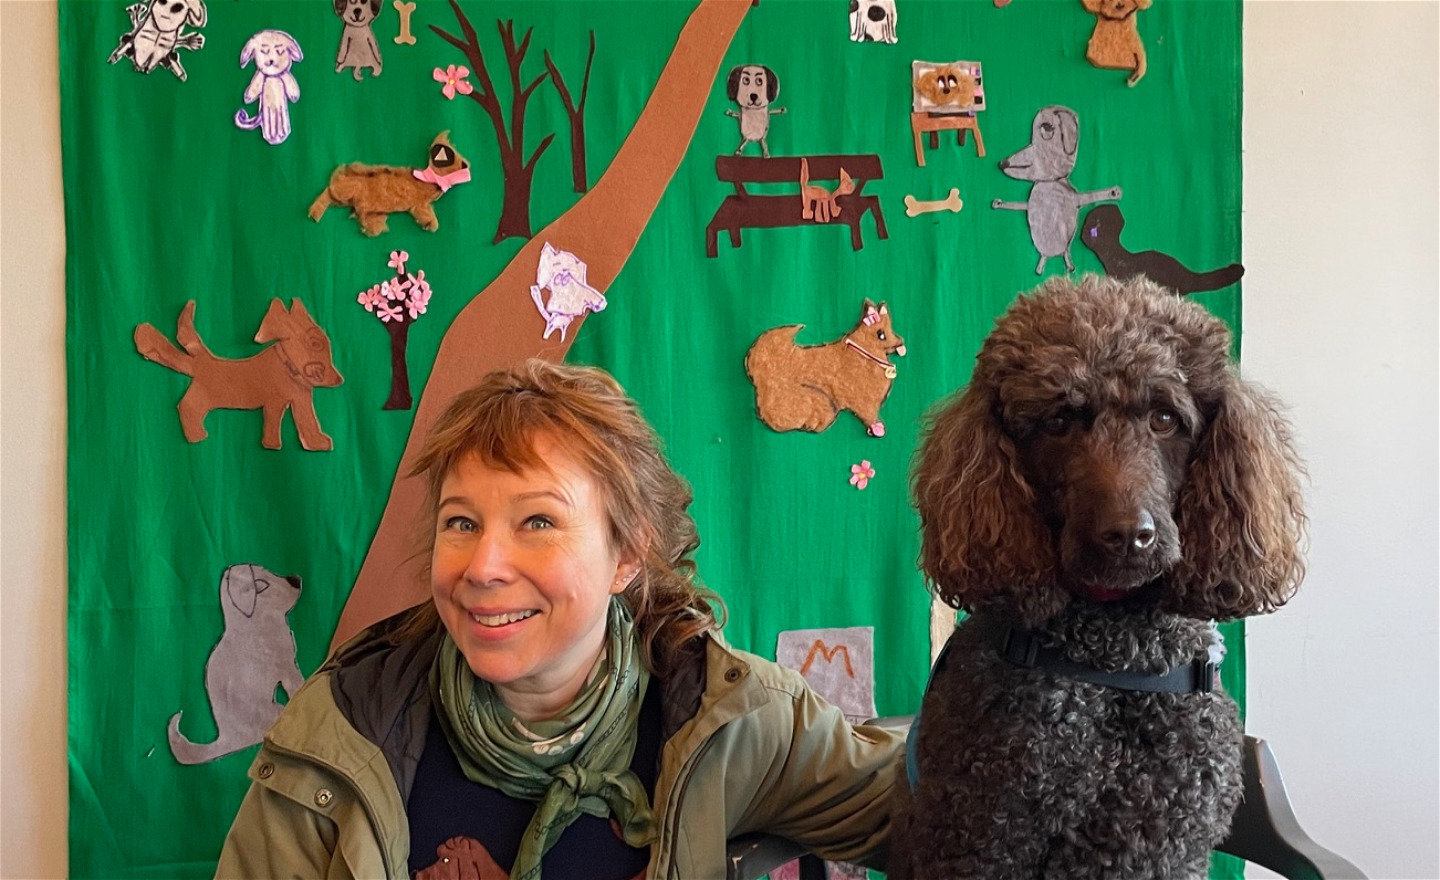 Konstnären Catti Brandelius och hunden Kokkos poserar glatt framför en tygbonad prydd av hundar